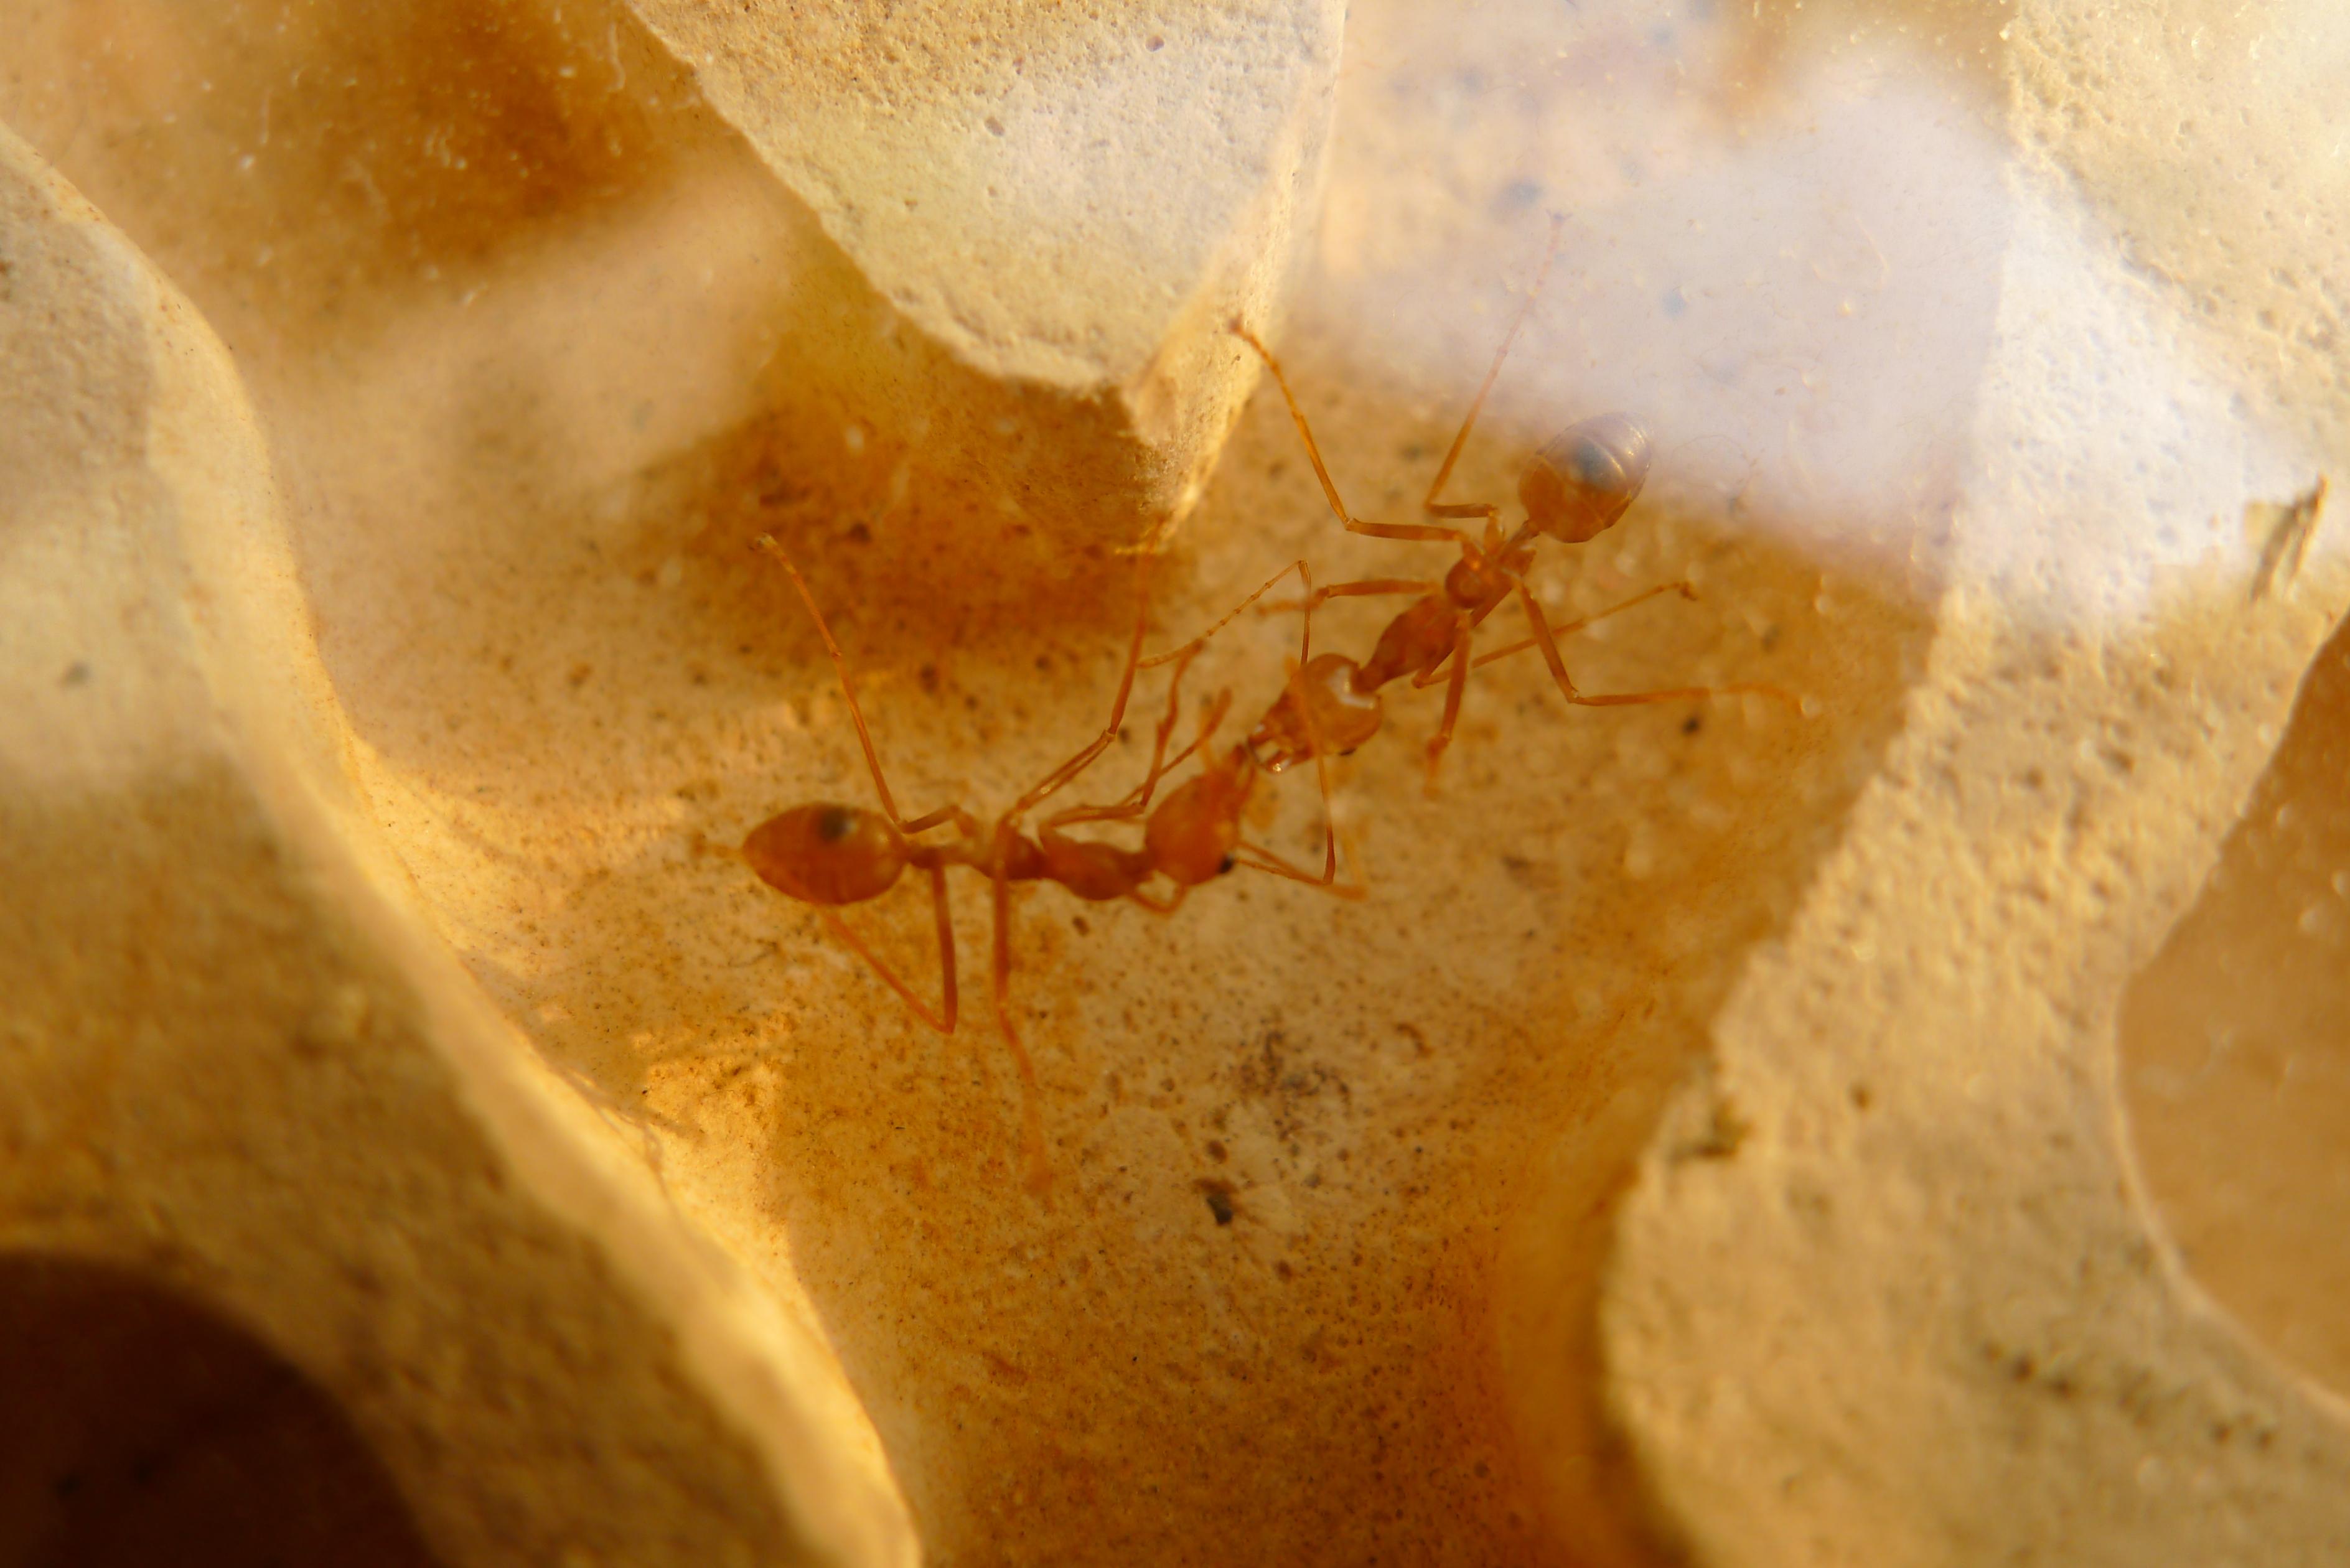 科学网—九个蚂蚁的奇趣故事 - 王从彦的博文